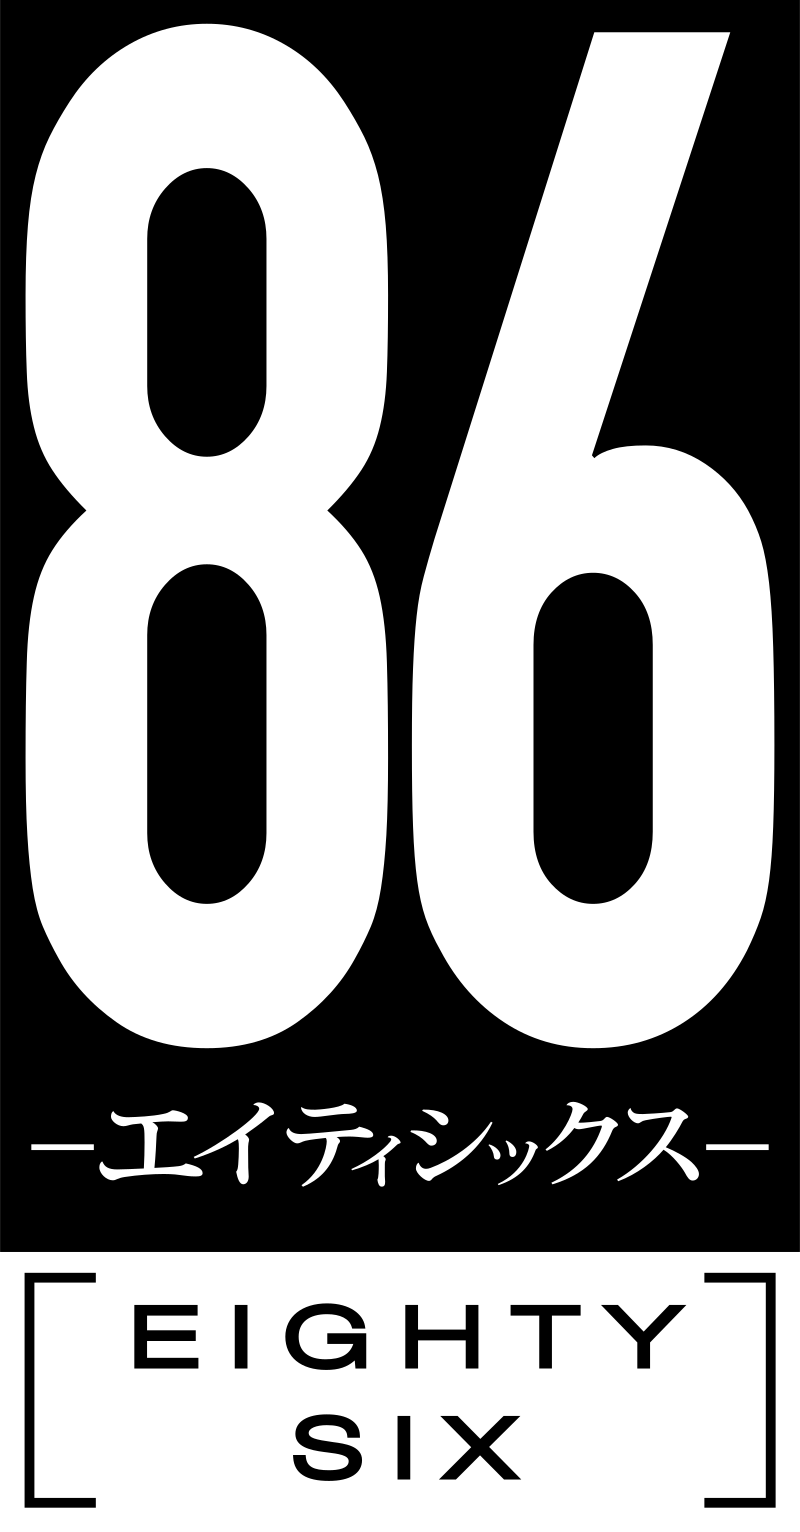 86 Eighty-Six tendrá un evento presencial en Japón, ¿Se anunciará